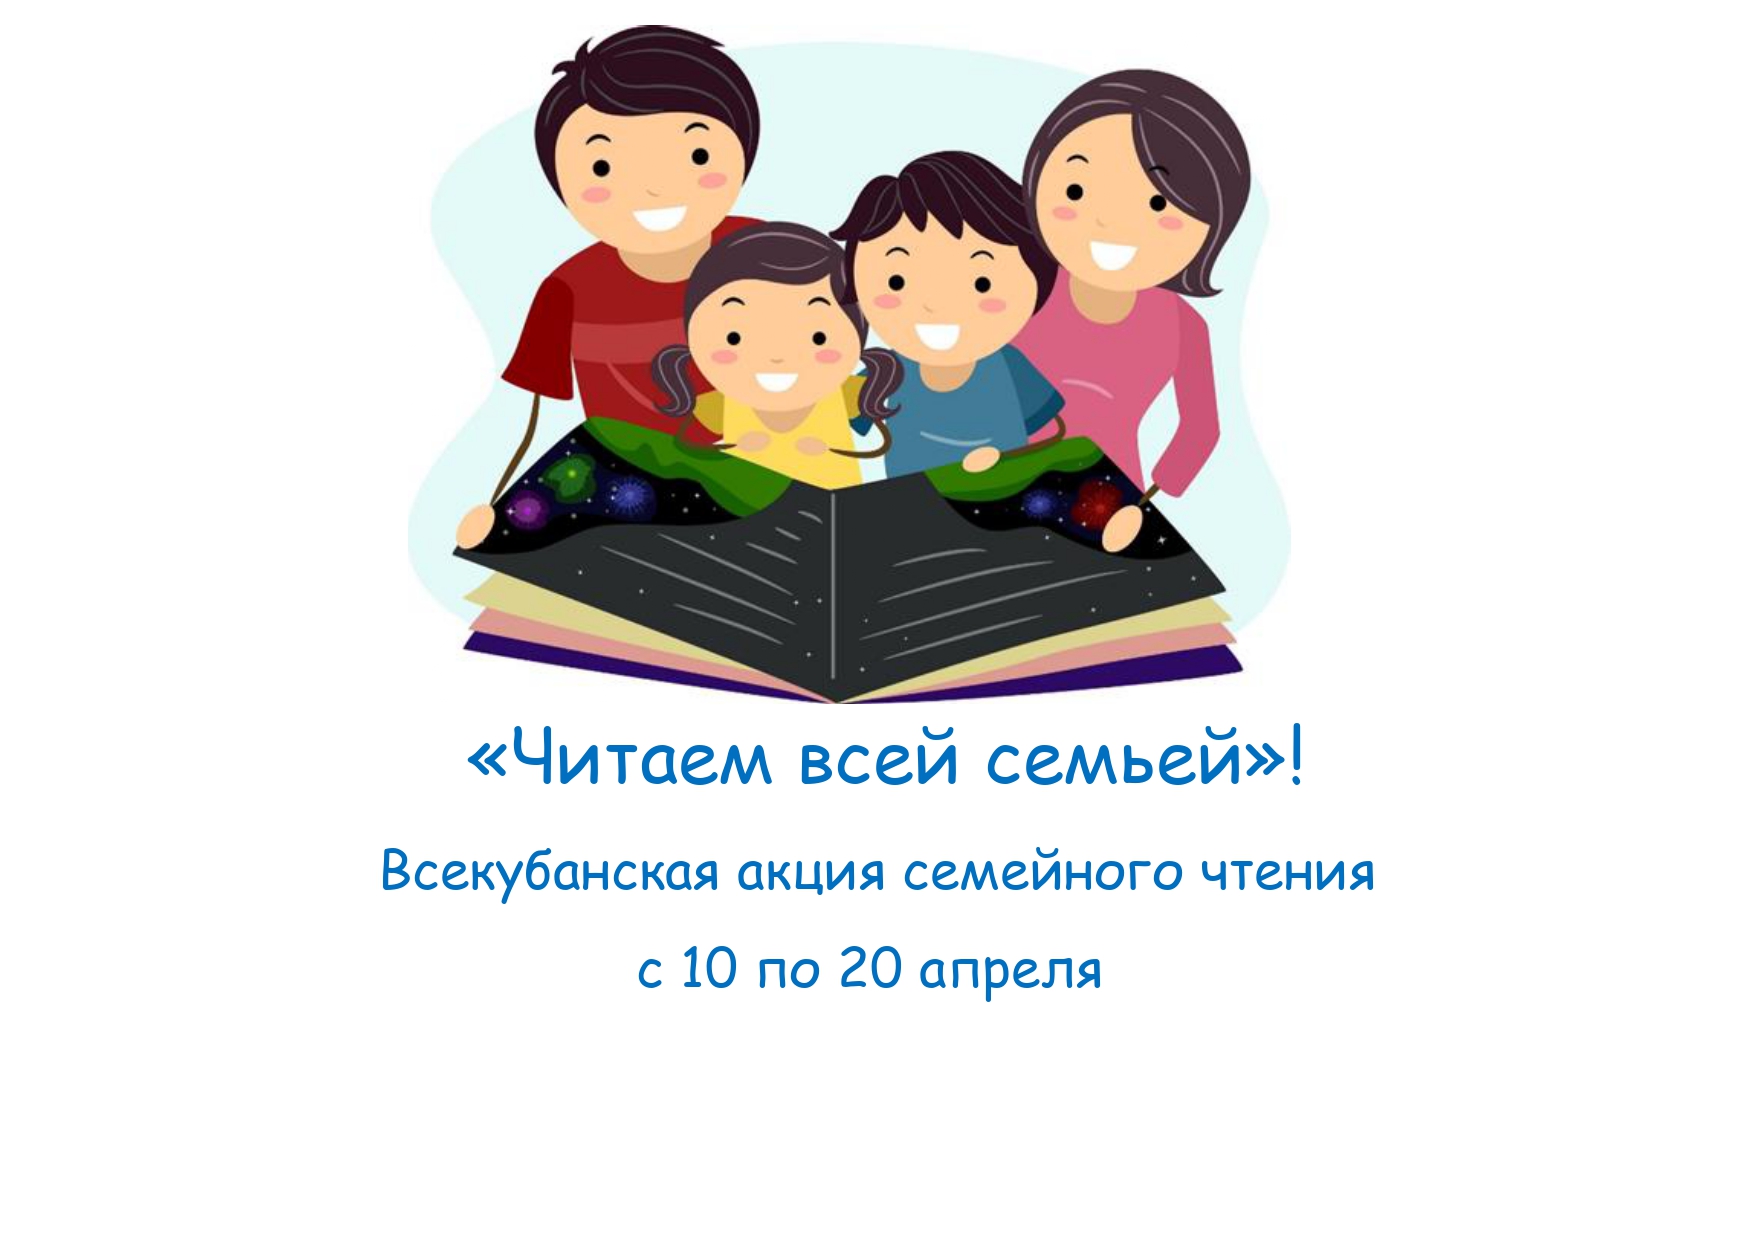 Всекубанская акция семейного чтения «Читаем всей семьей»